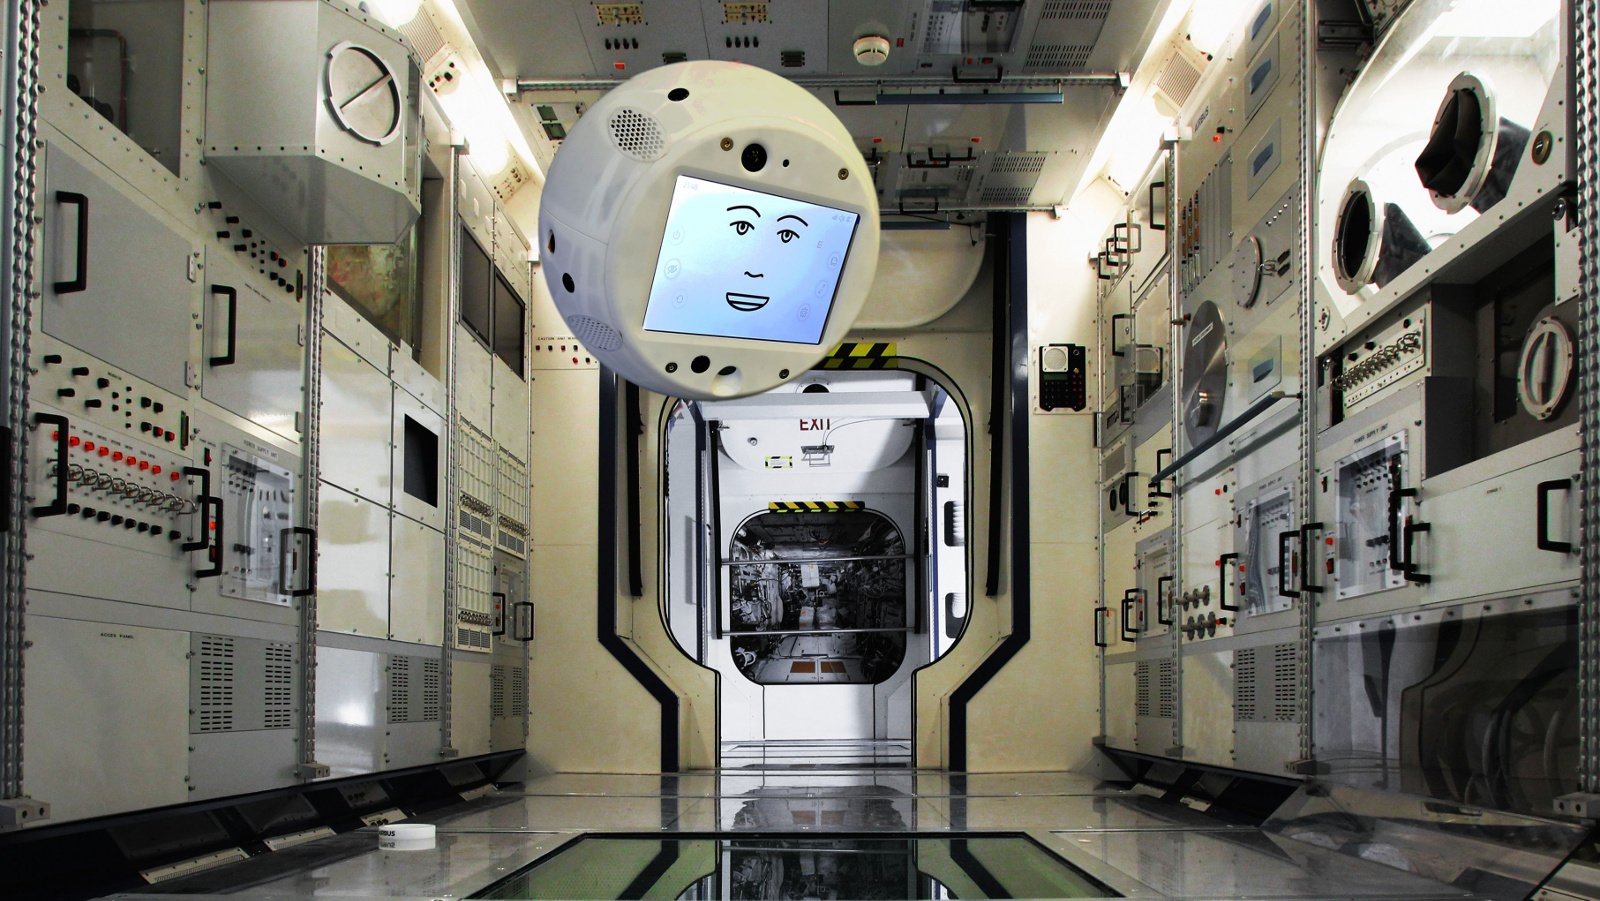 El nuevo miembro de la tripulación de la iss será de vuelo de un robot con inteligencia artificial